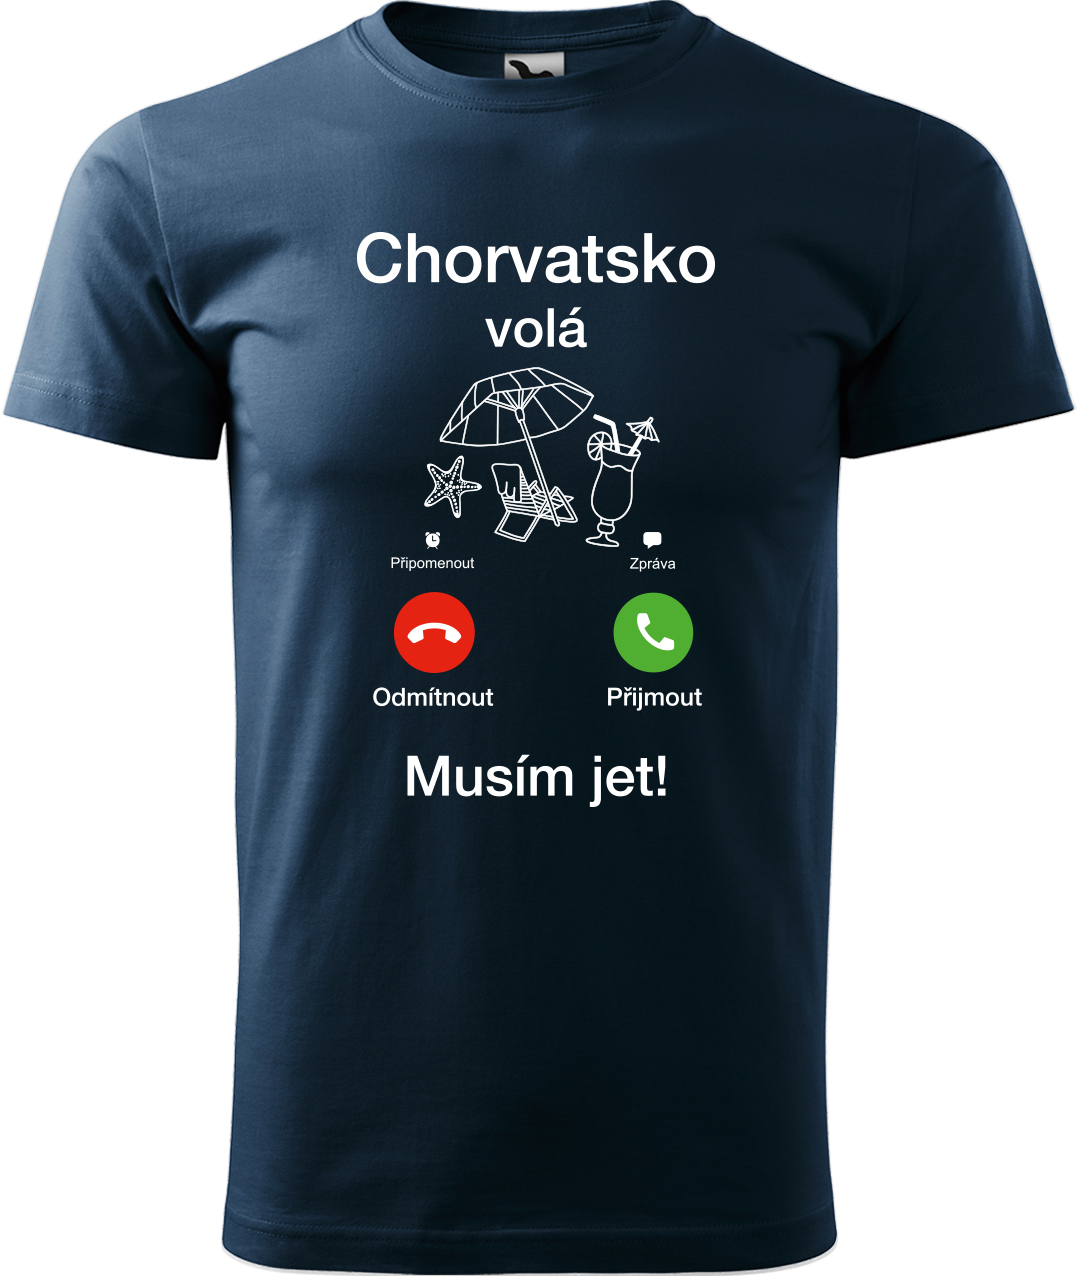 Pánské cestovatelské tričko - Chorvatsko volá - musím jet! Velikost: XL, Barva: Námořní modrá (02), Střih: pánský